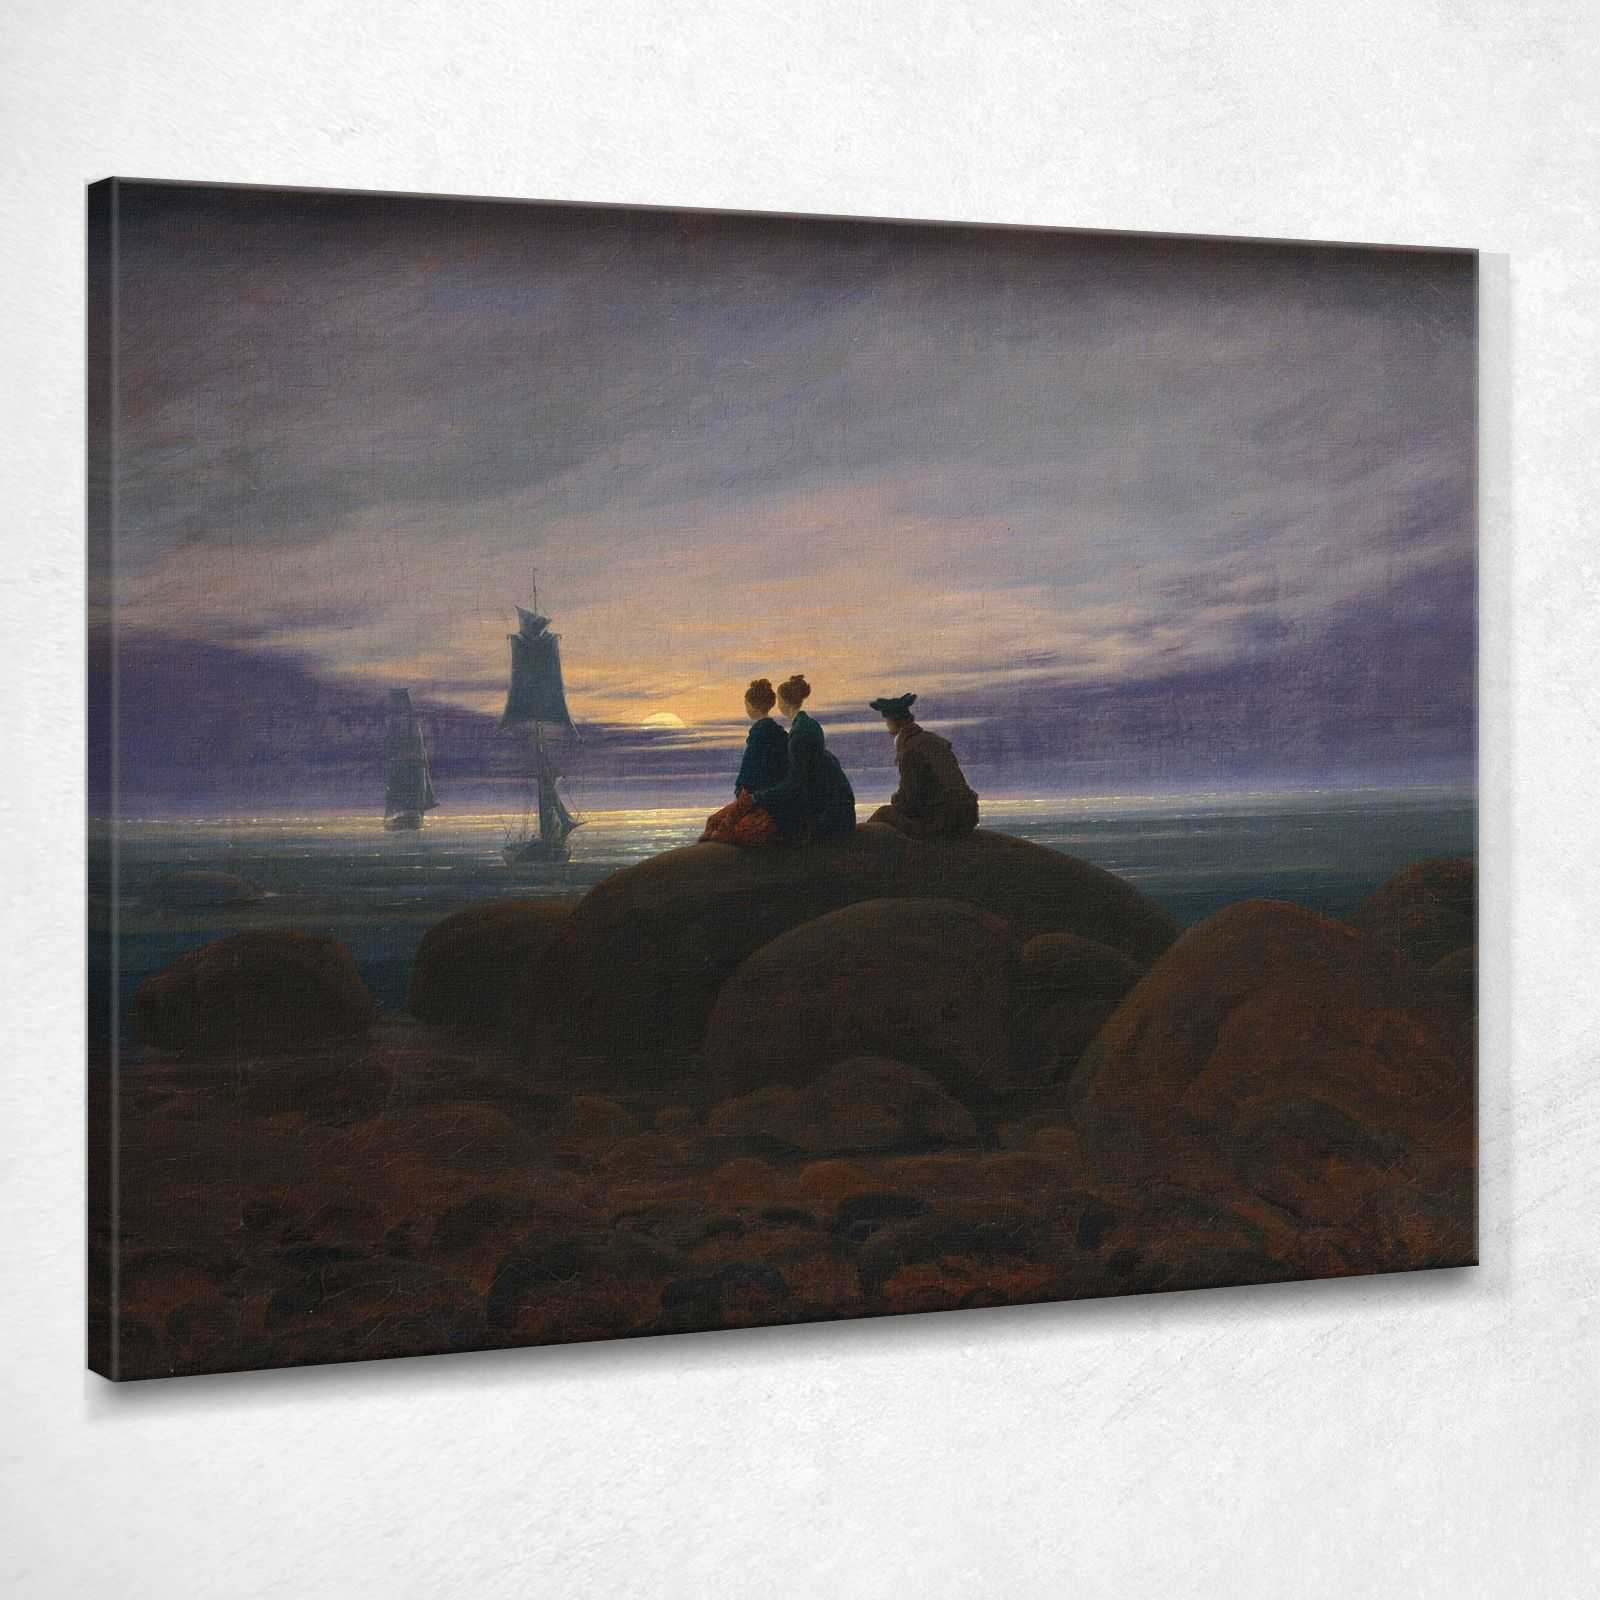 Aufgang des Mondes über dem Meer Caspar David Friedrich Gemälde CD8